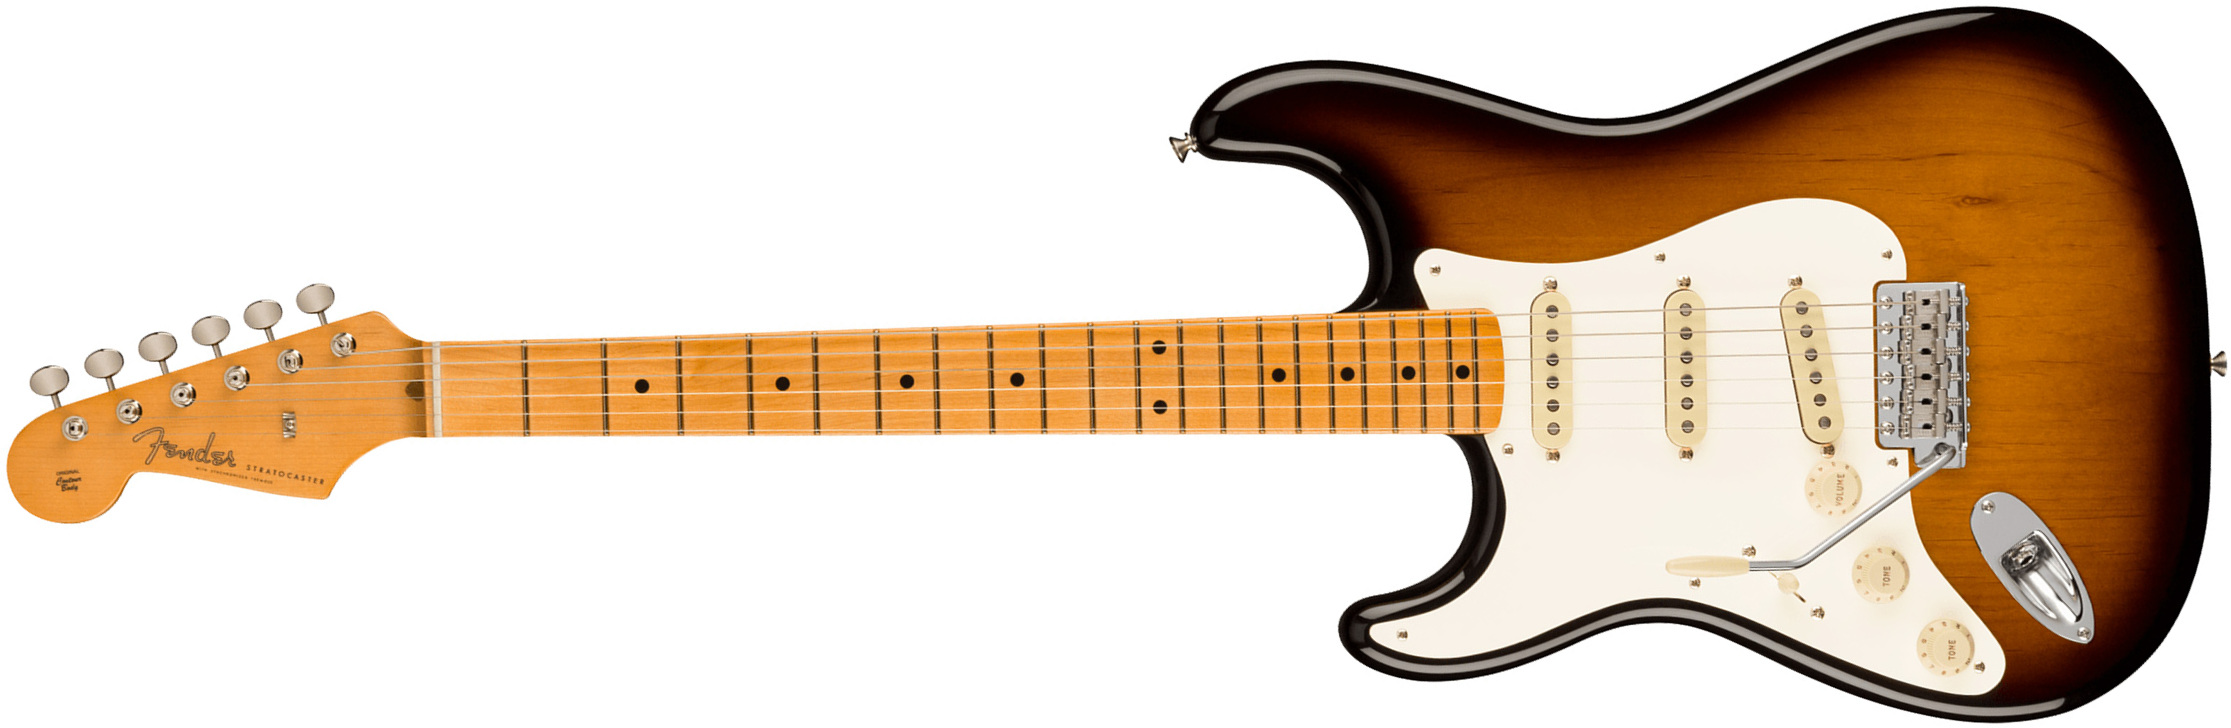 Fender Strat 1957 American Vintage Ii Lh Gaucher Usa 3s Trem Mn - 2-color Sunburst - E-Gitarre für Linkshänder - Main picture